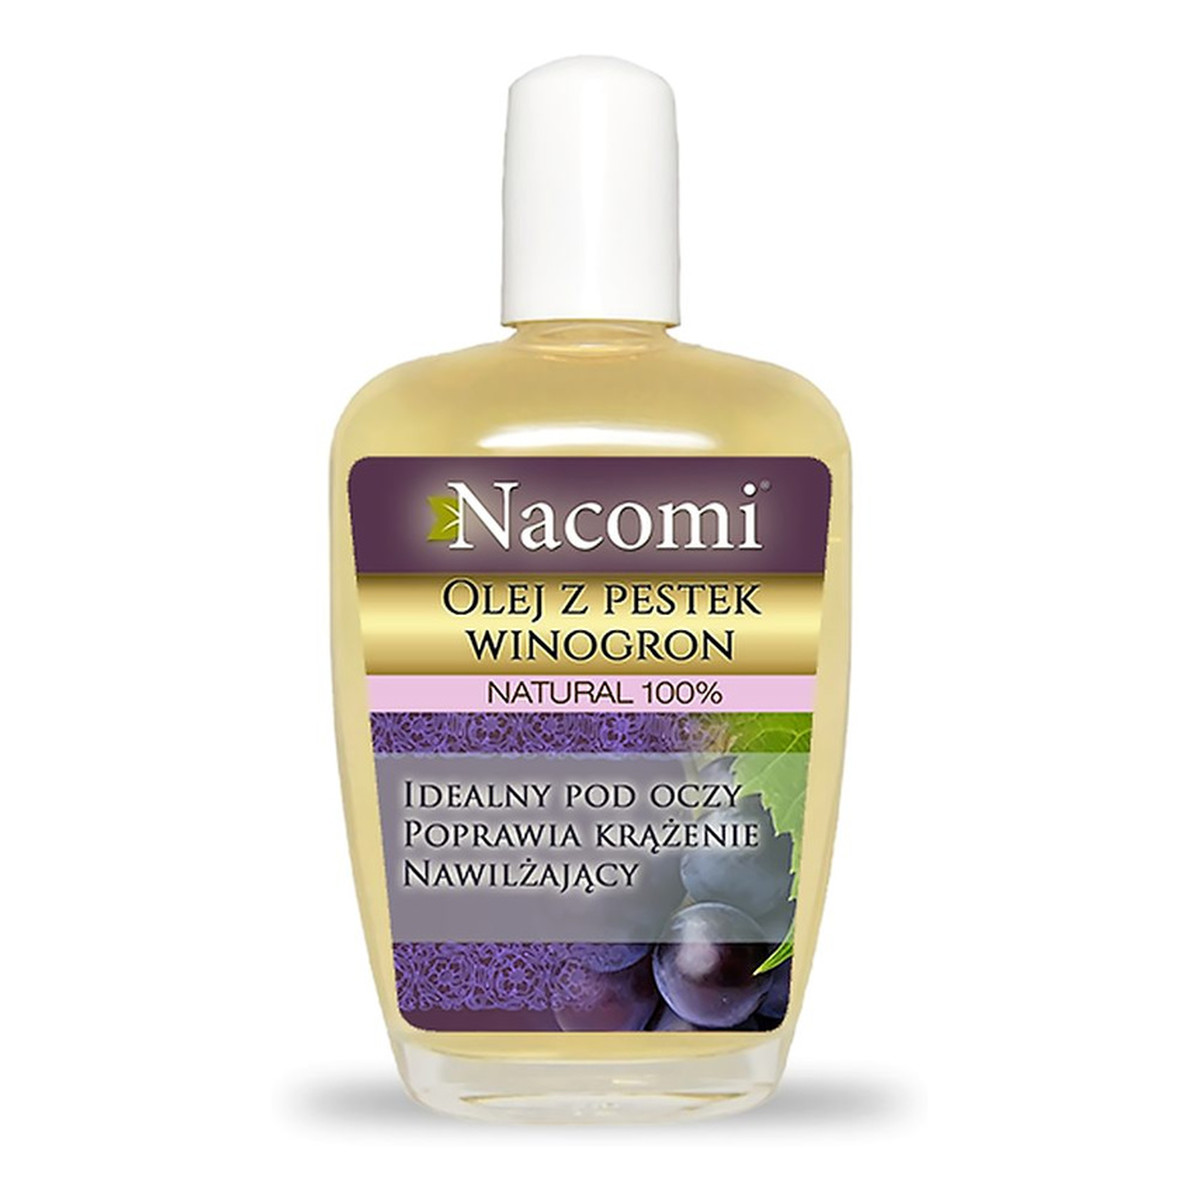 Nacomi Rafinowany Natural 100% Olej z Pestek Winogron Idealny pod oczy Poprawia krążenie Nawilża 30ml